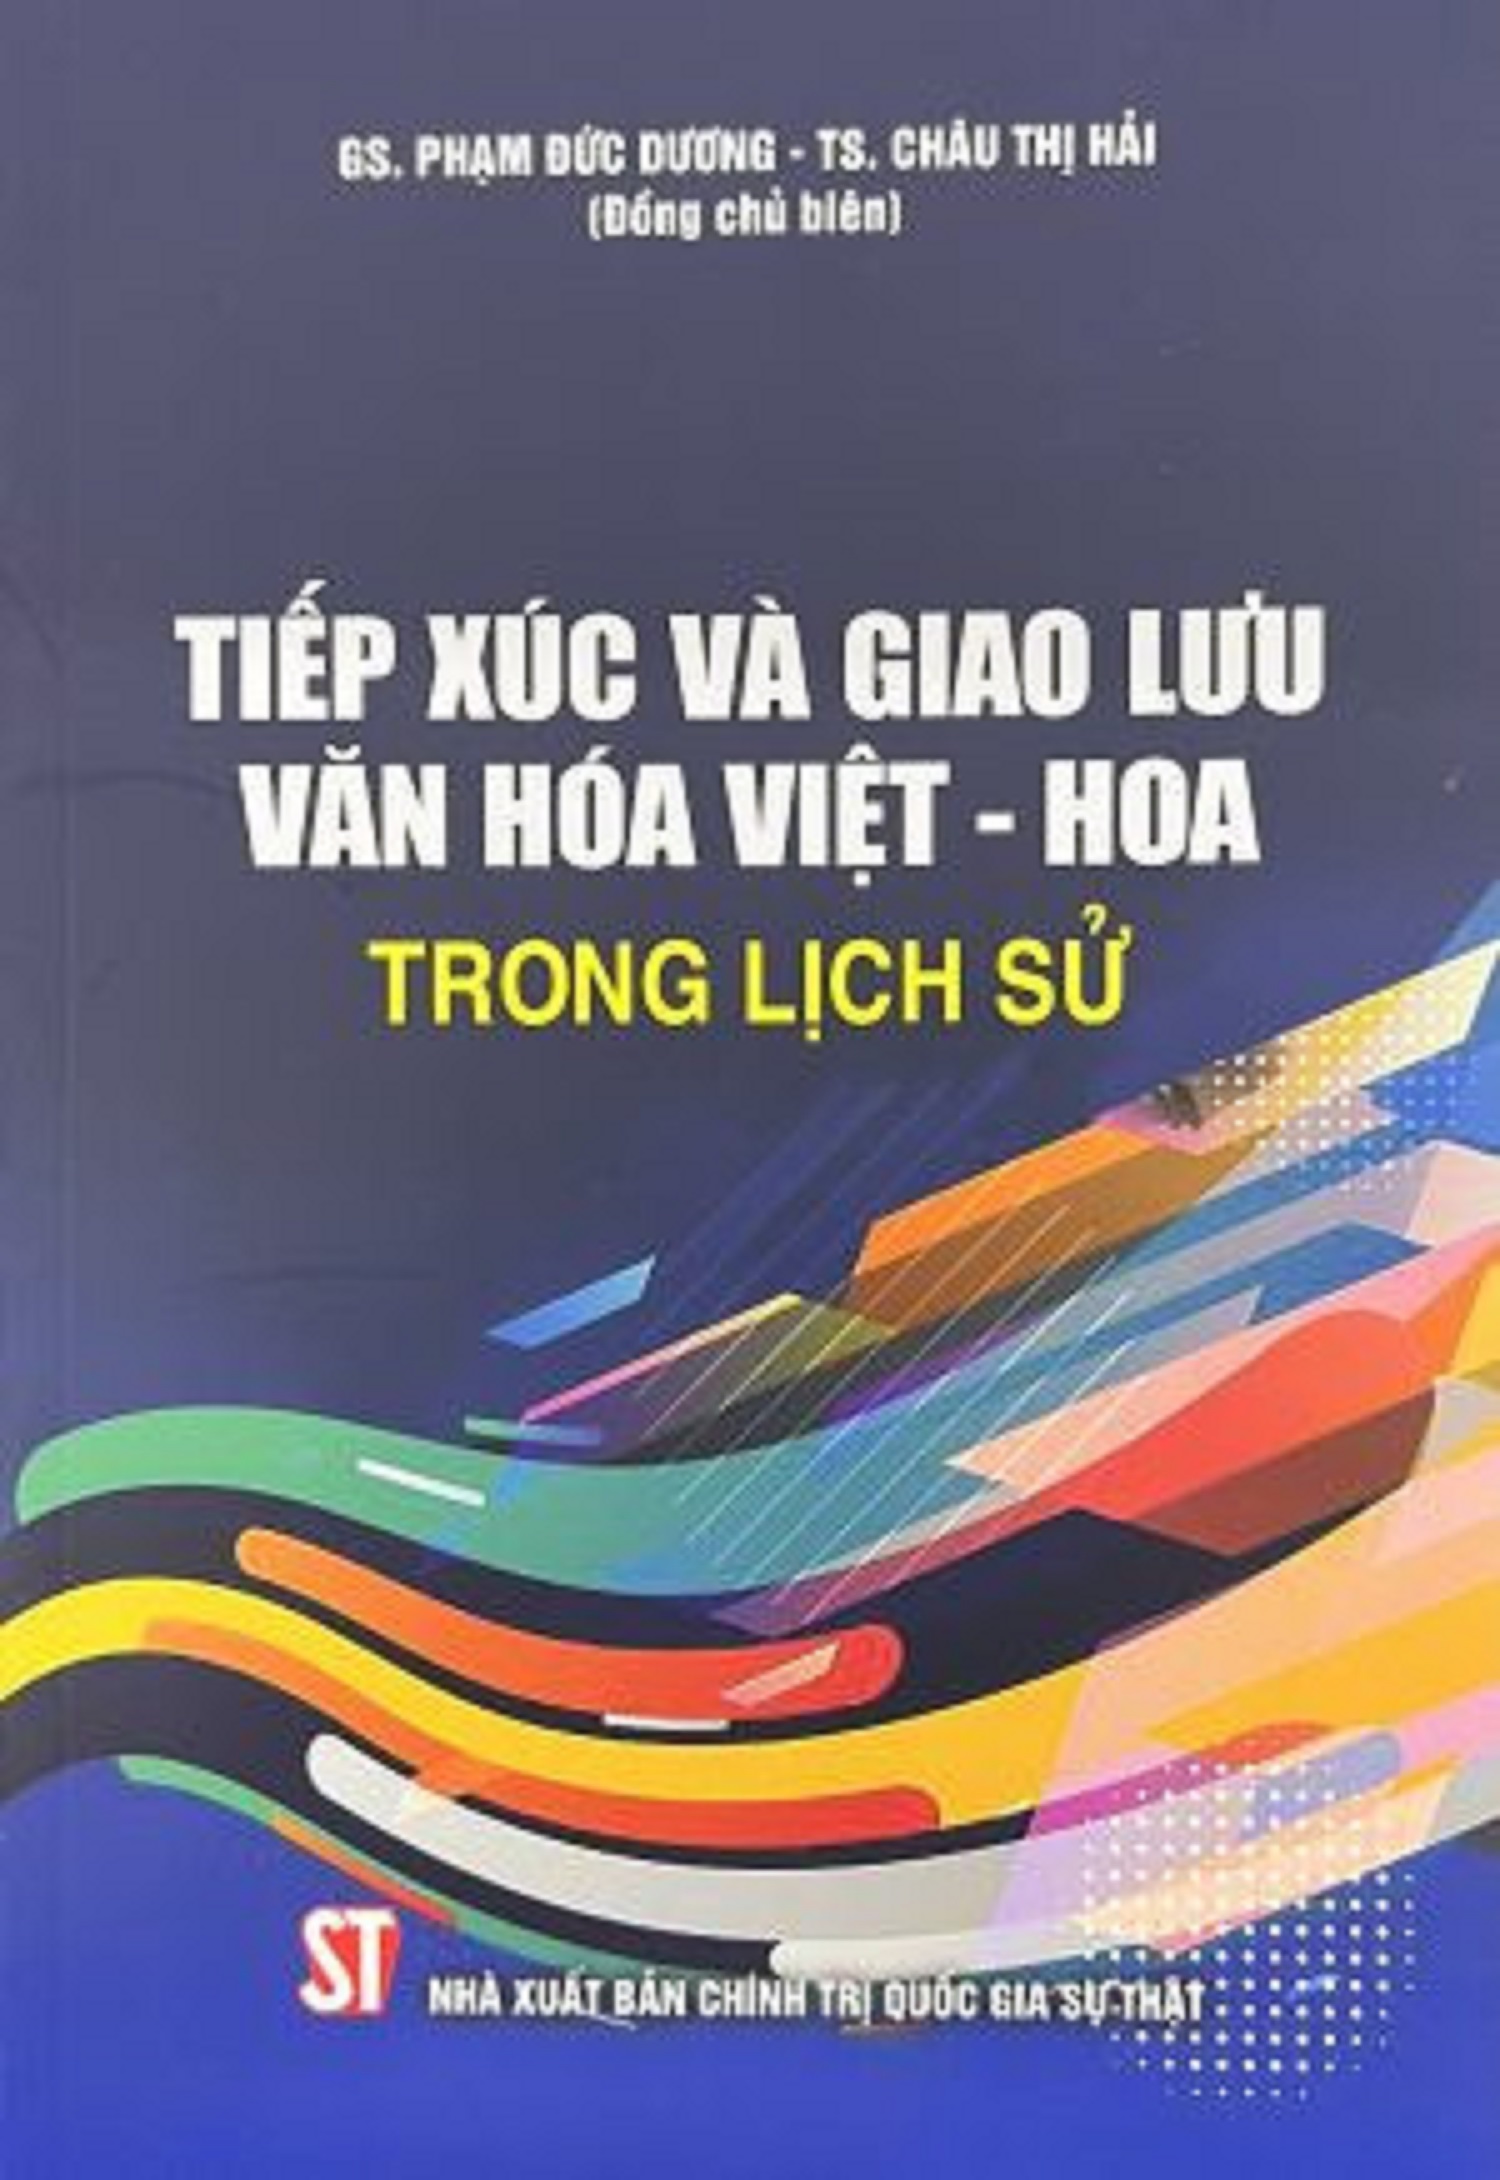 Tiếp xúc và giao lưu văn hóa Việt - Hoa trong lịch sử 